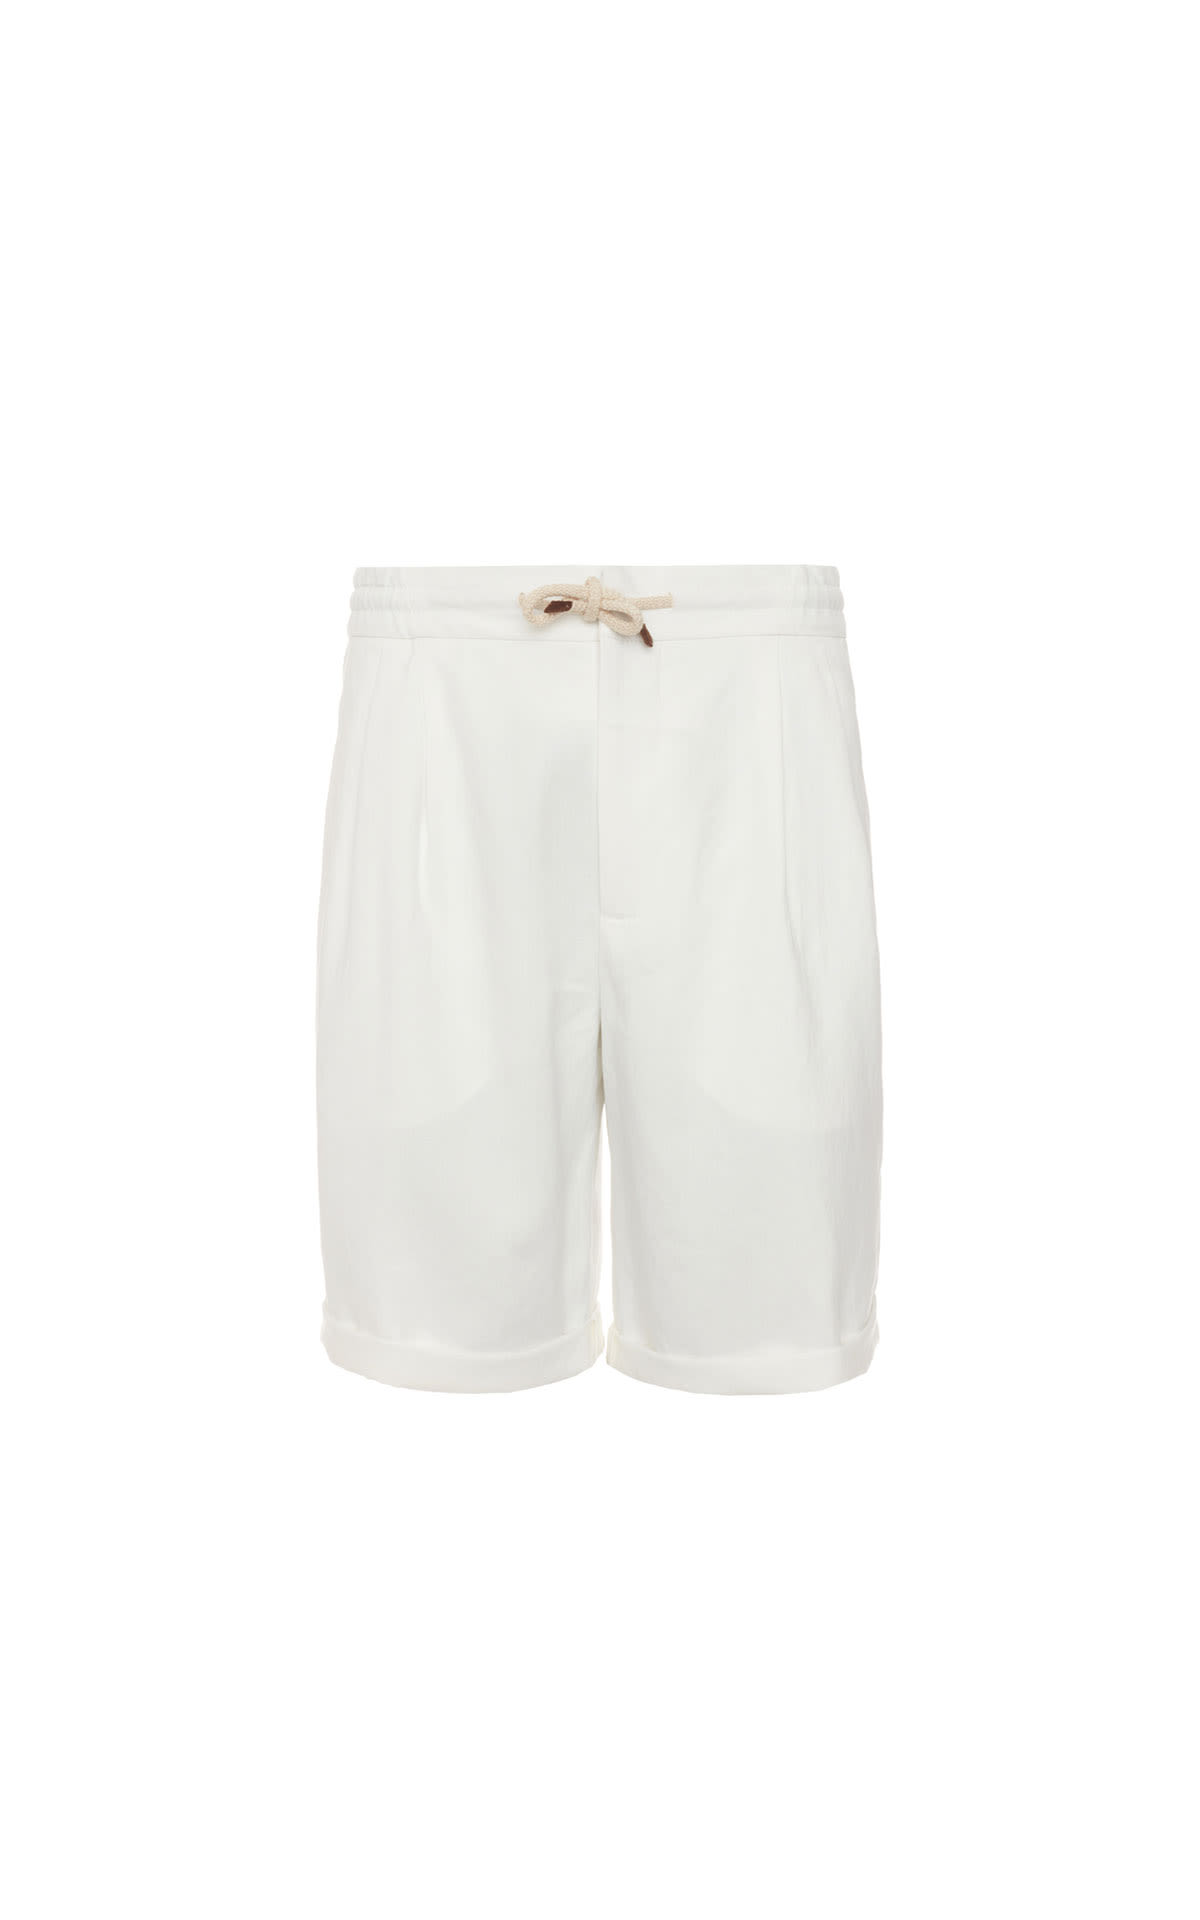 Brunello Cucinelli Linen drawstring shorts from Bicester Village